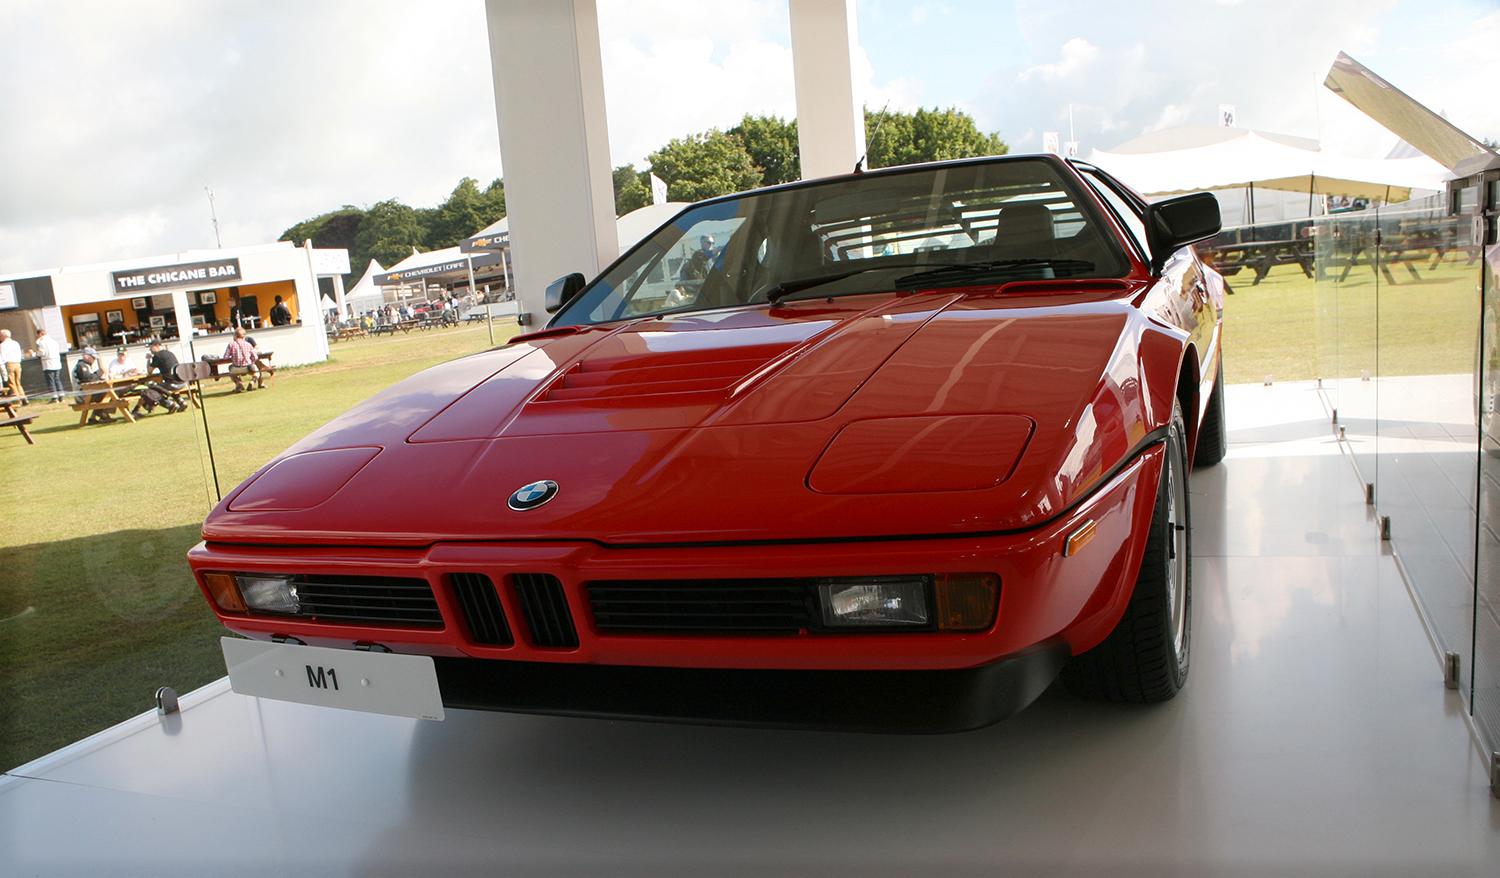 BMW:s klassiska superbil M1 stod och glänste i tillverkarens specialpaviljong för M-bilar.